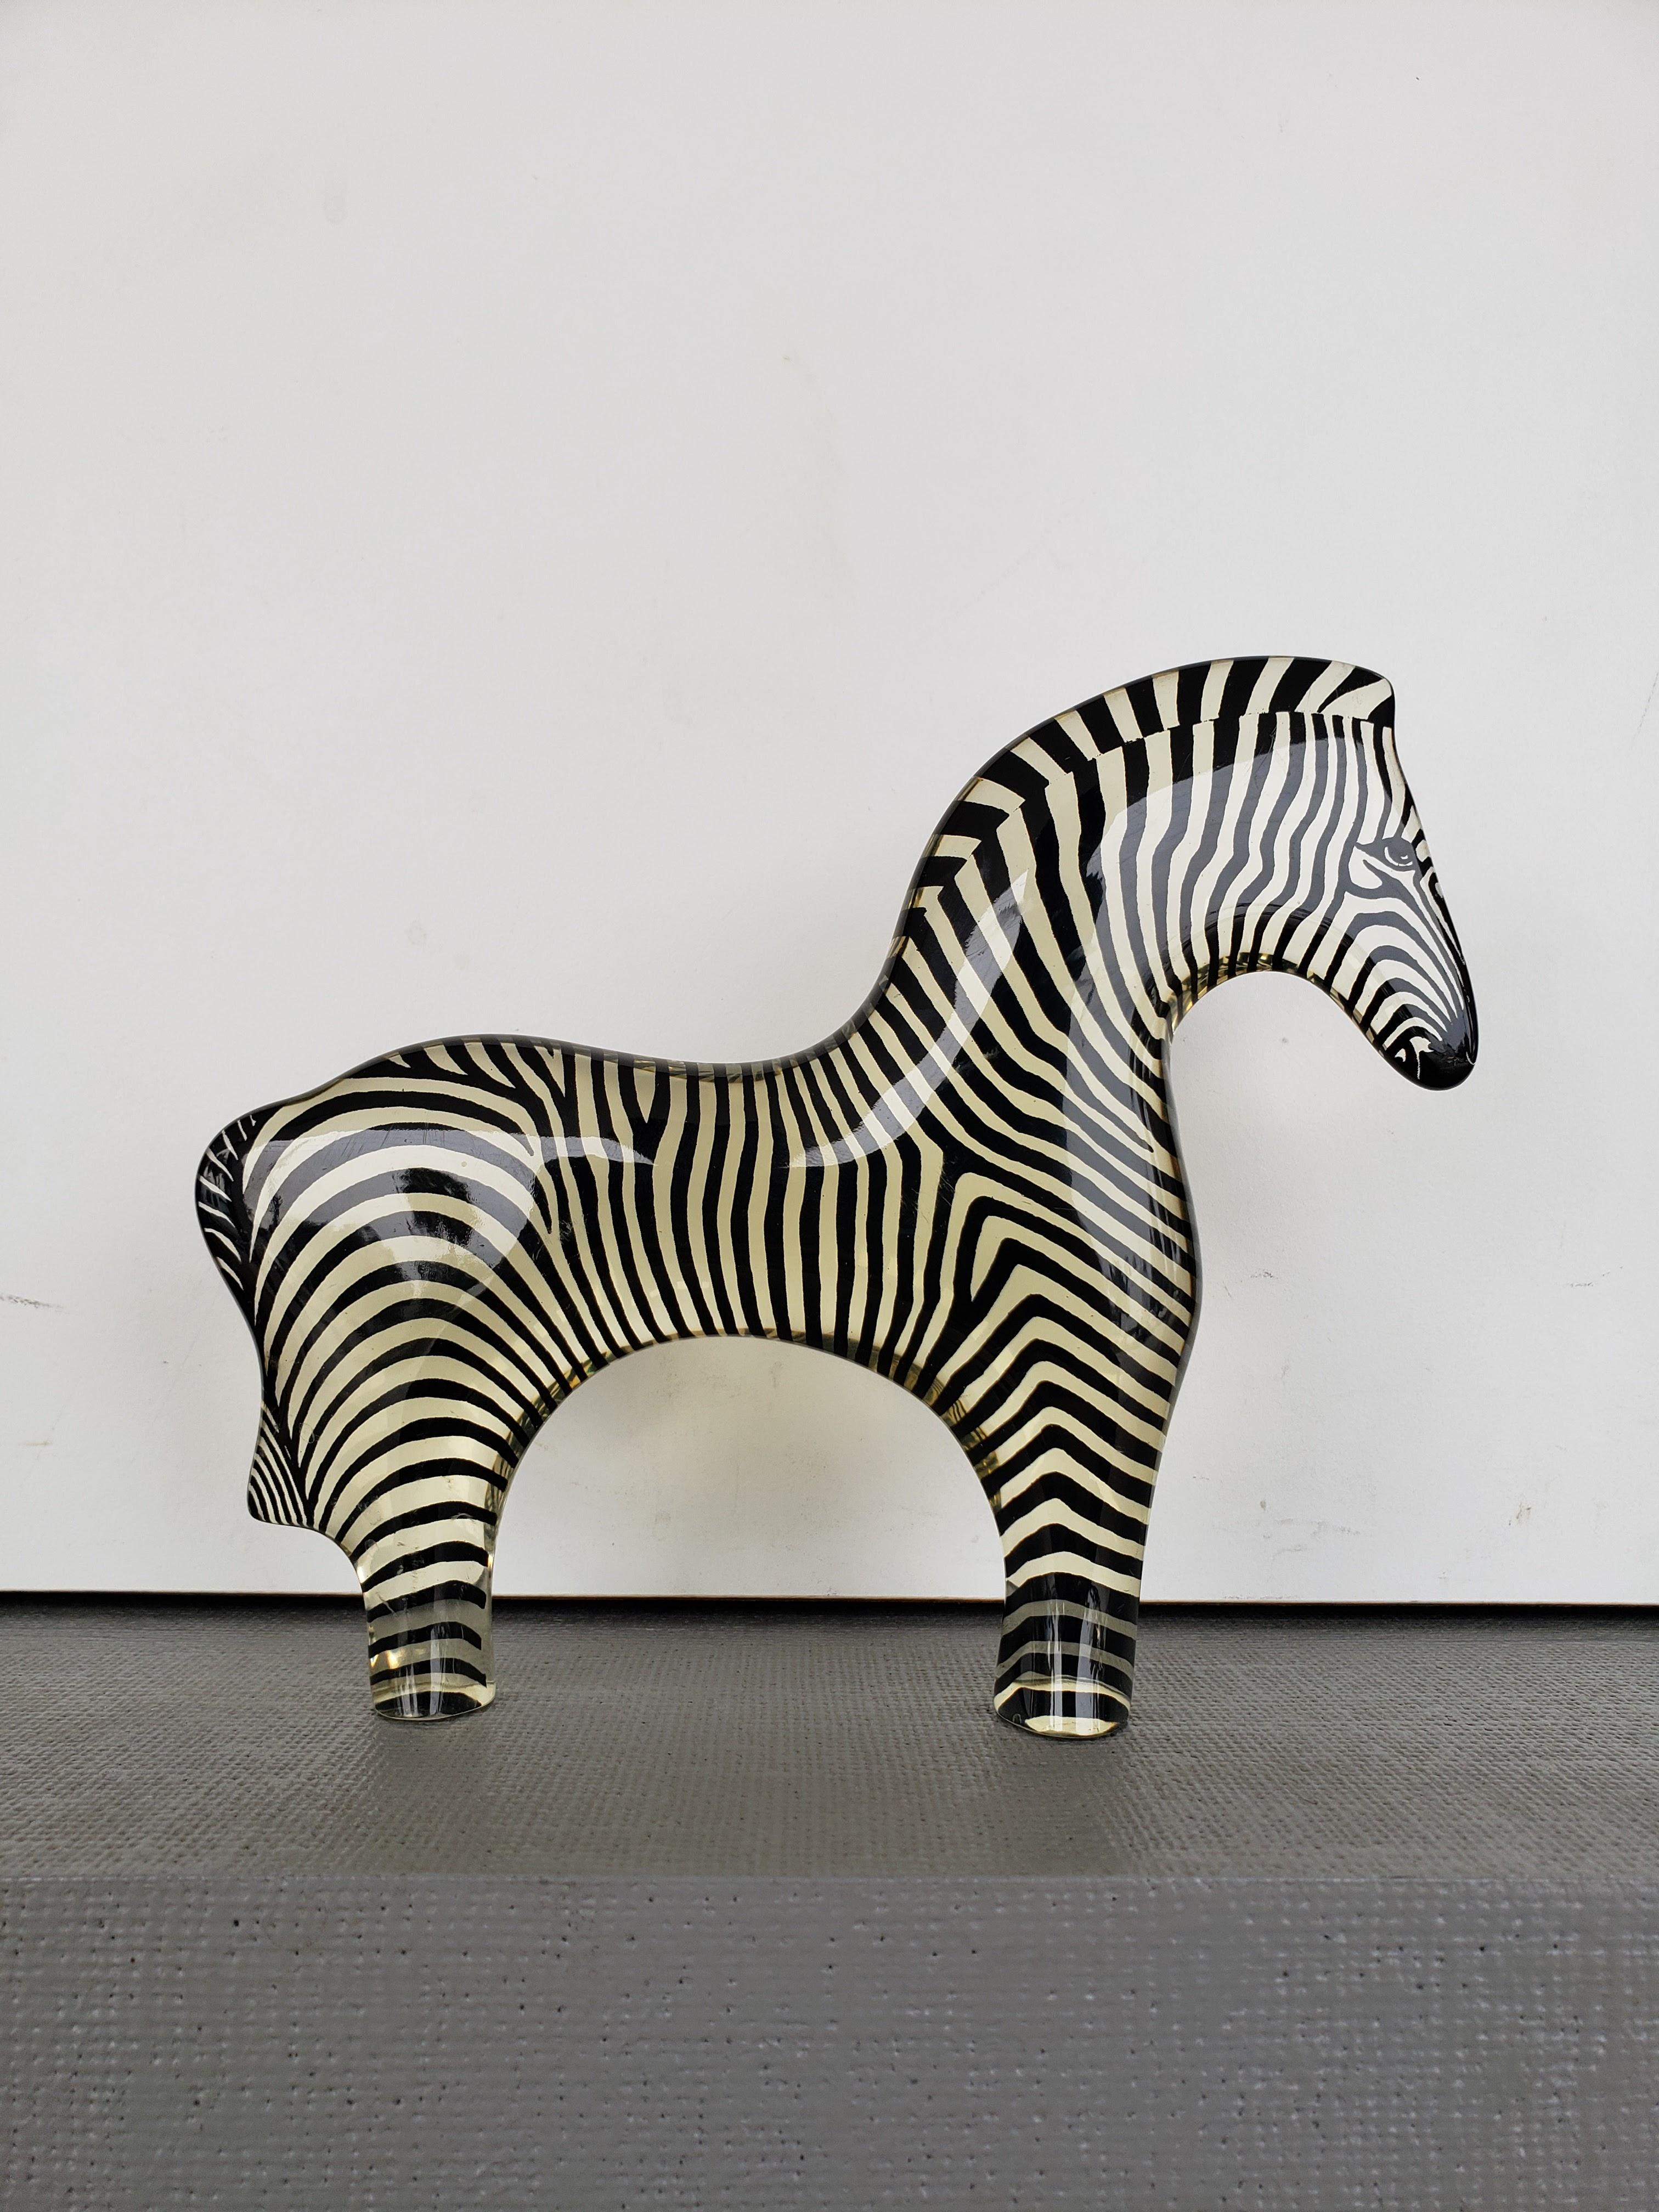 Abraham Palatnik Skulptur eines Zebras aus Lucit.  In ausgezeichnetem Zustand mit keine Probleme zu berichten.

Großartiges Beispiel einer Op-Art-Skulptur von einem bekannten brasilianischen Künstler.  